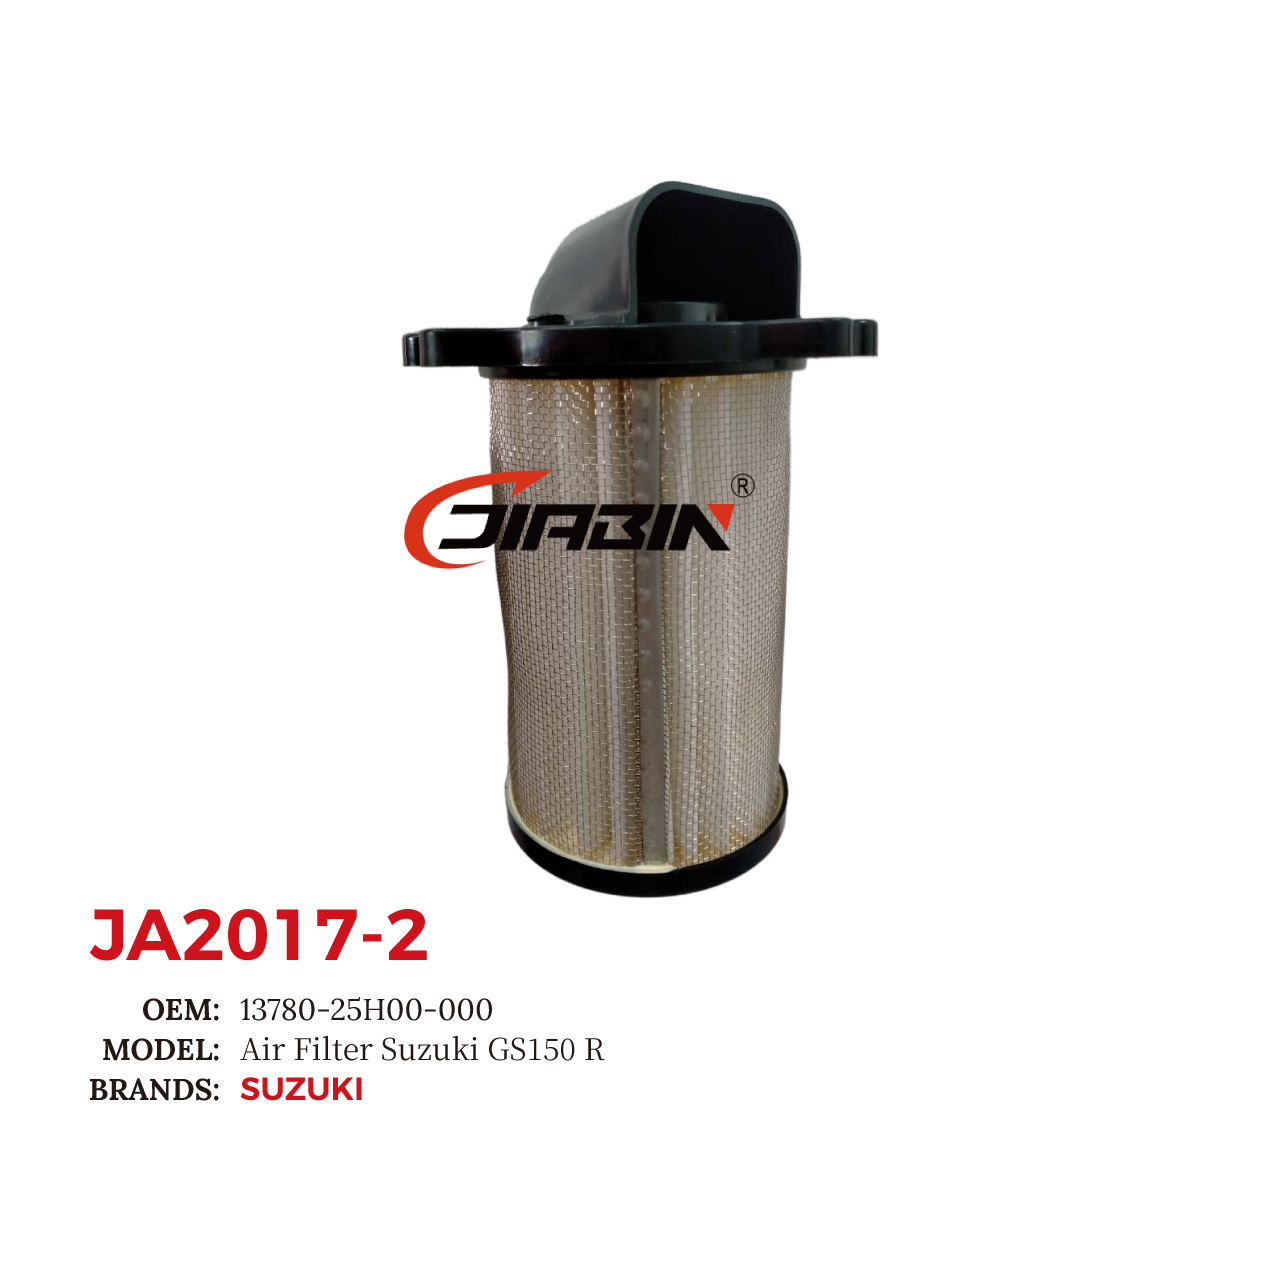 images/JA2017-2/JA2017-2_JB_2.jpg